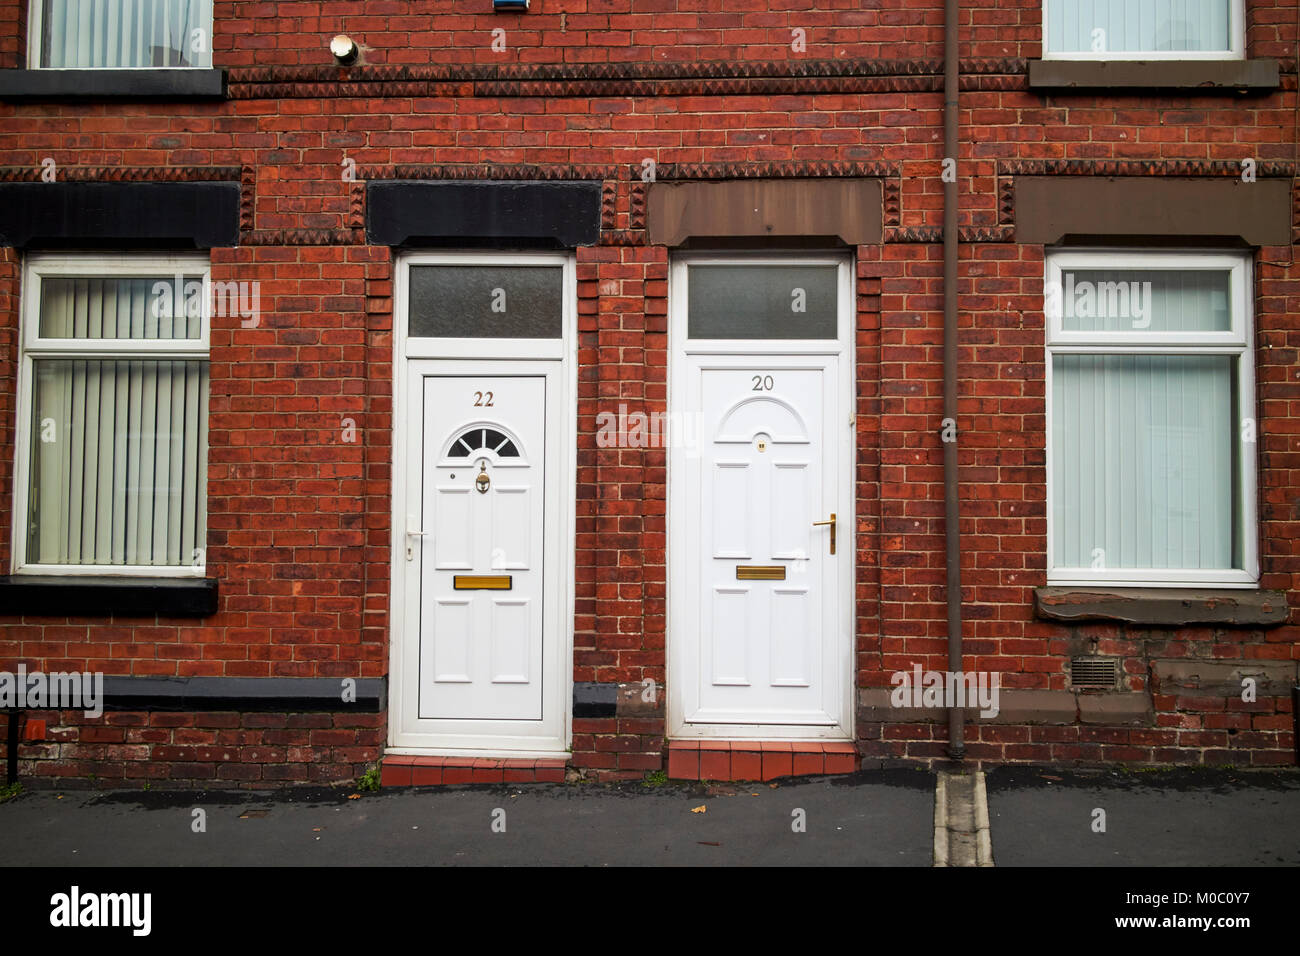 Les portes en PVC blanc moderne sur deux chambres mitoyennes de style victorien en briques rouges ward street St Helens merseyside uk Banque D'Images